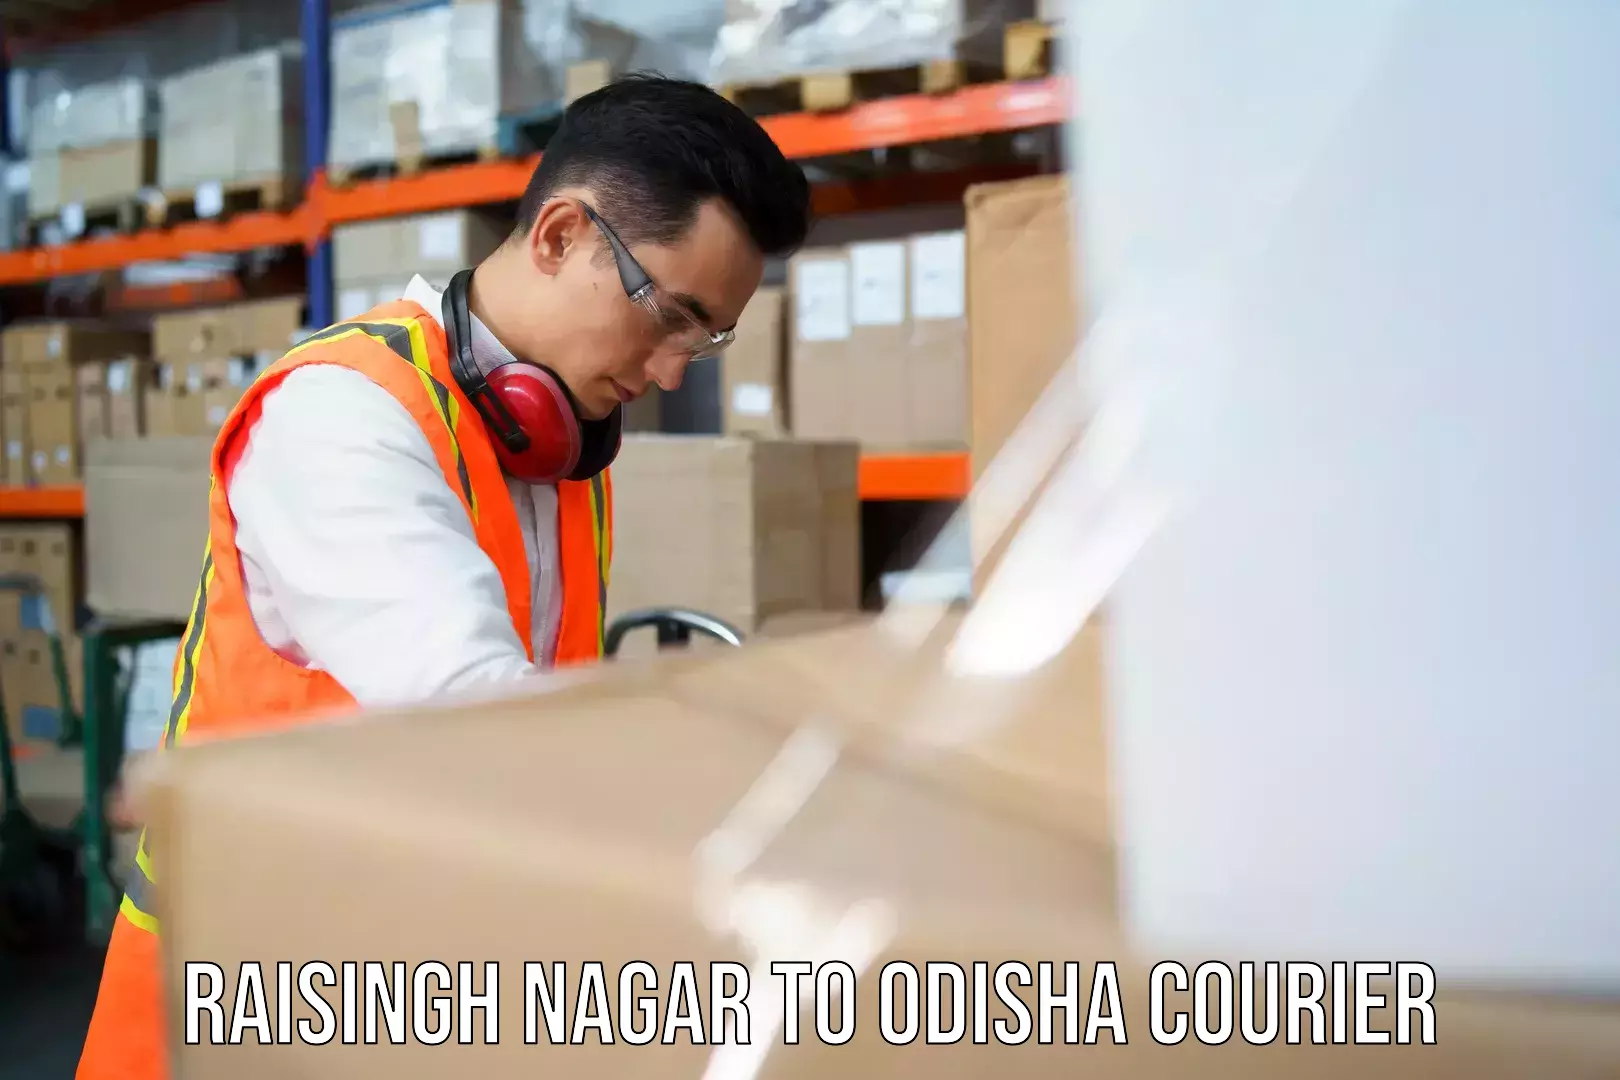 Custom courier solutions Raisingh Nagar to Jharsuguda